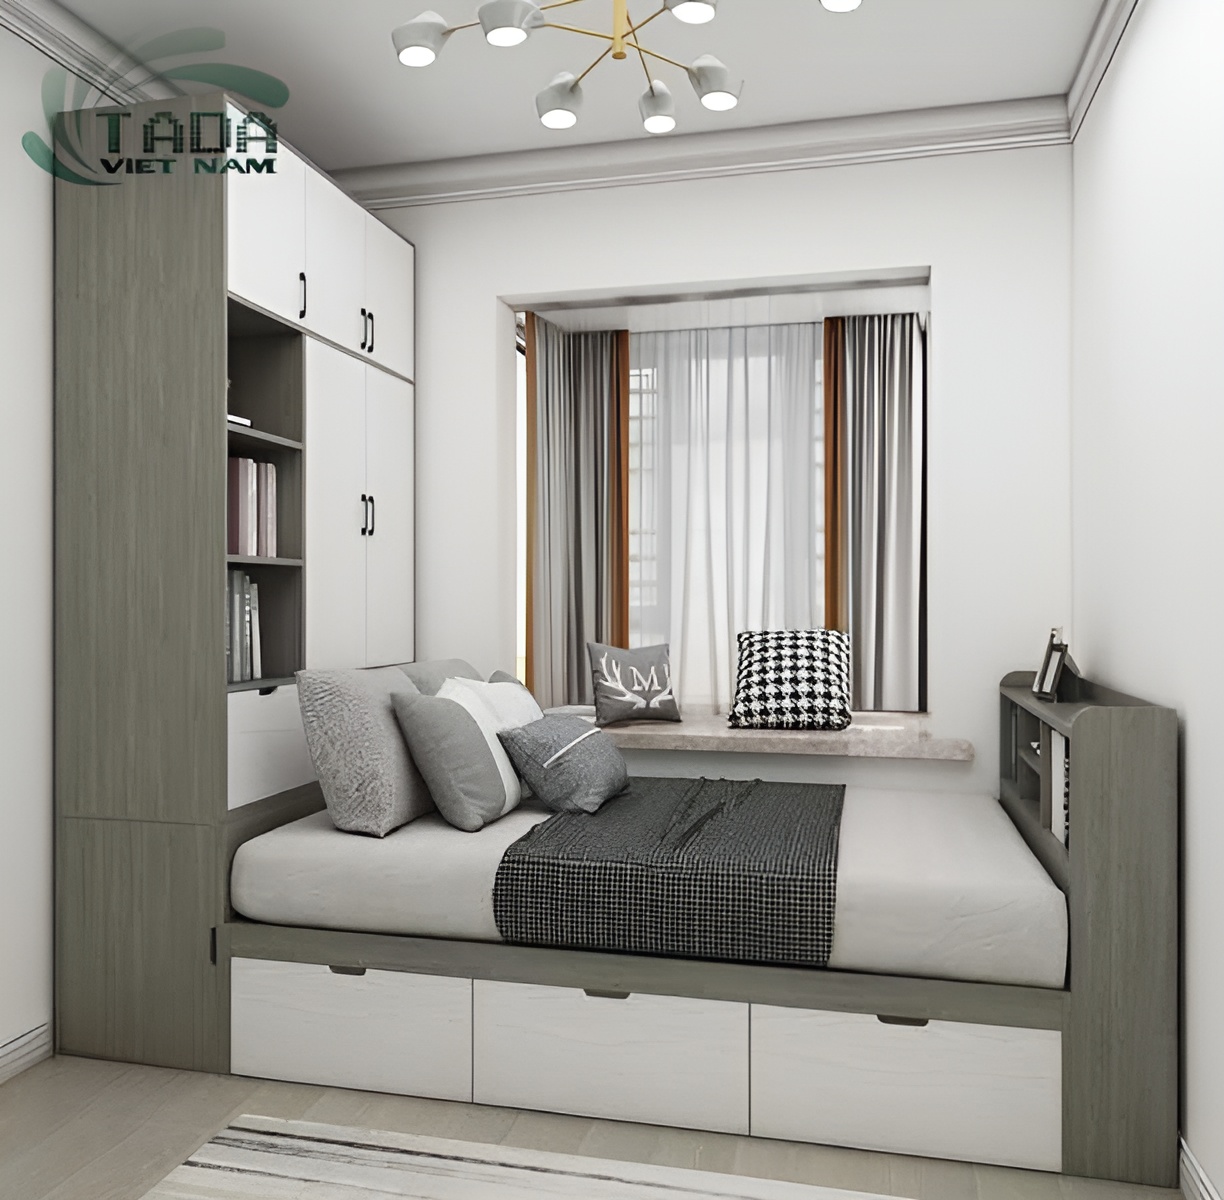 Giường tủ kết hợp bàn học hiện đại Tada Việt Nam TD3190